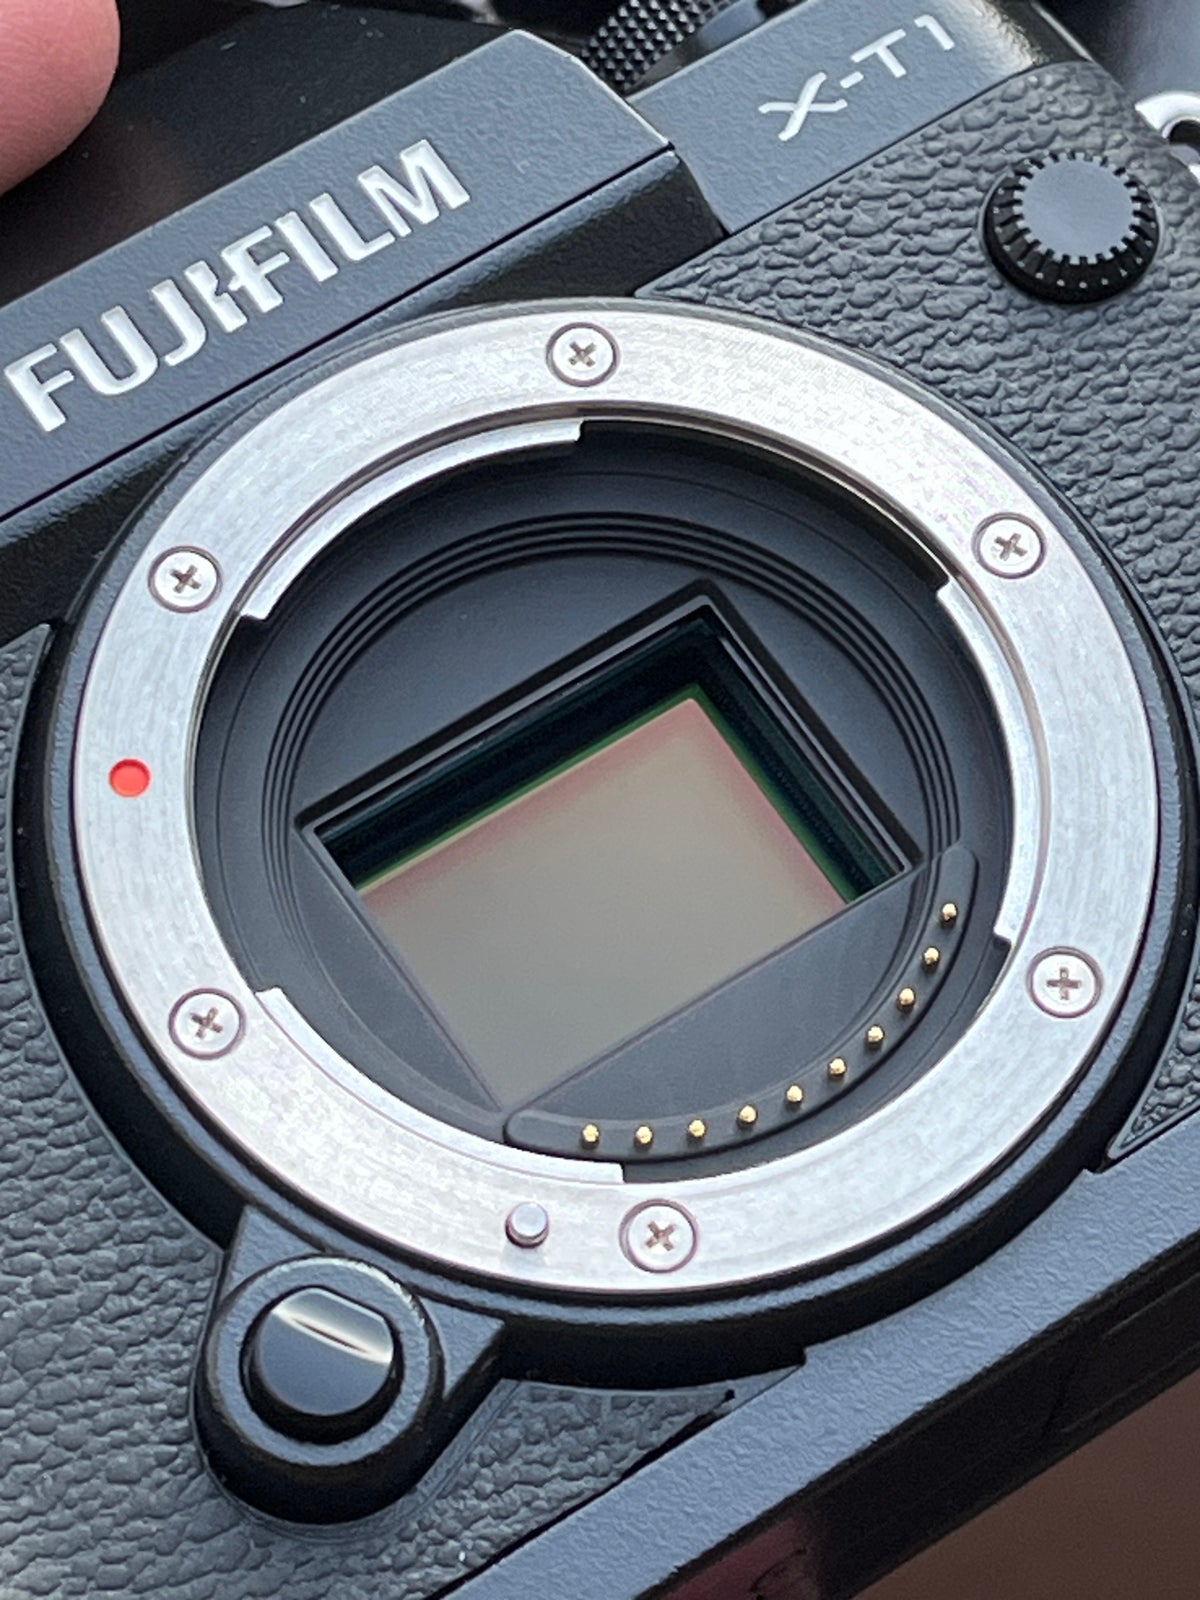 Fujifilm, X-T1, 16.7 megapixels